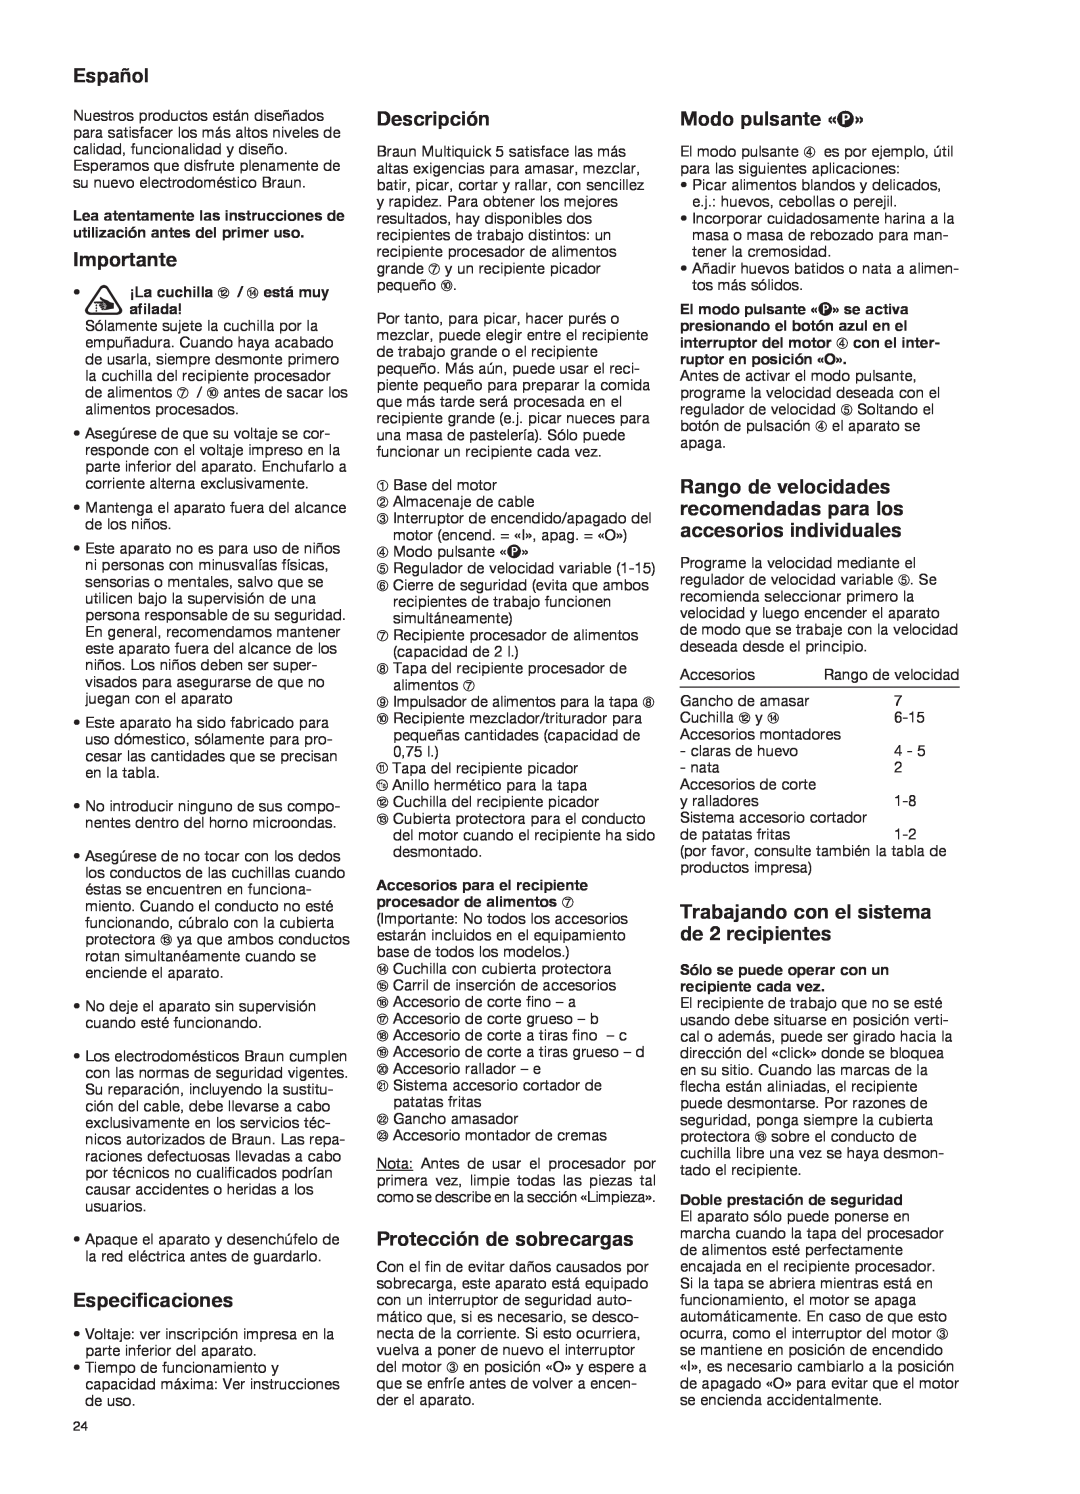 Braun K 700 black manual Español, Importante, Especificaciones, Descripción, Protección de sobrecargas, Modo pulsante «P» 